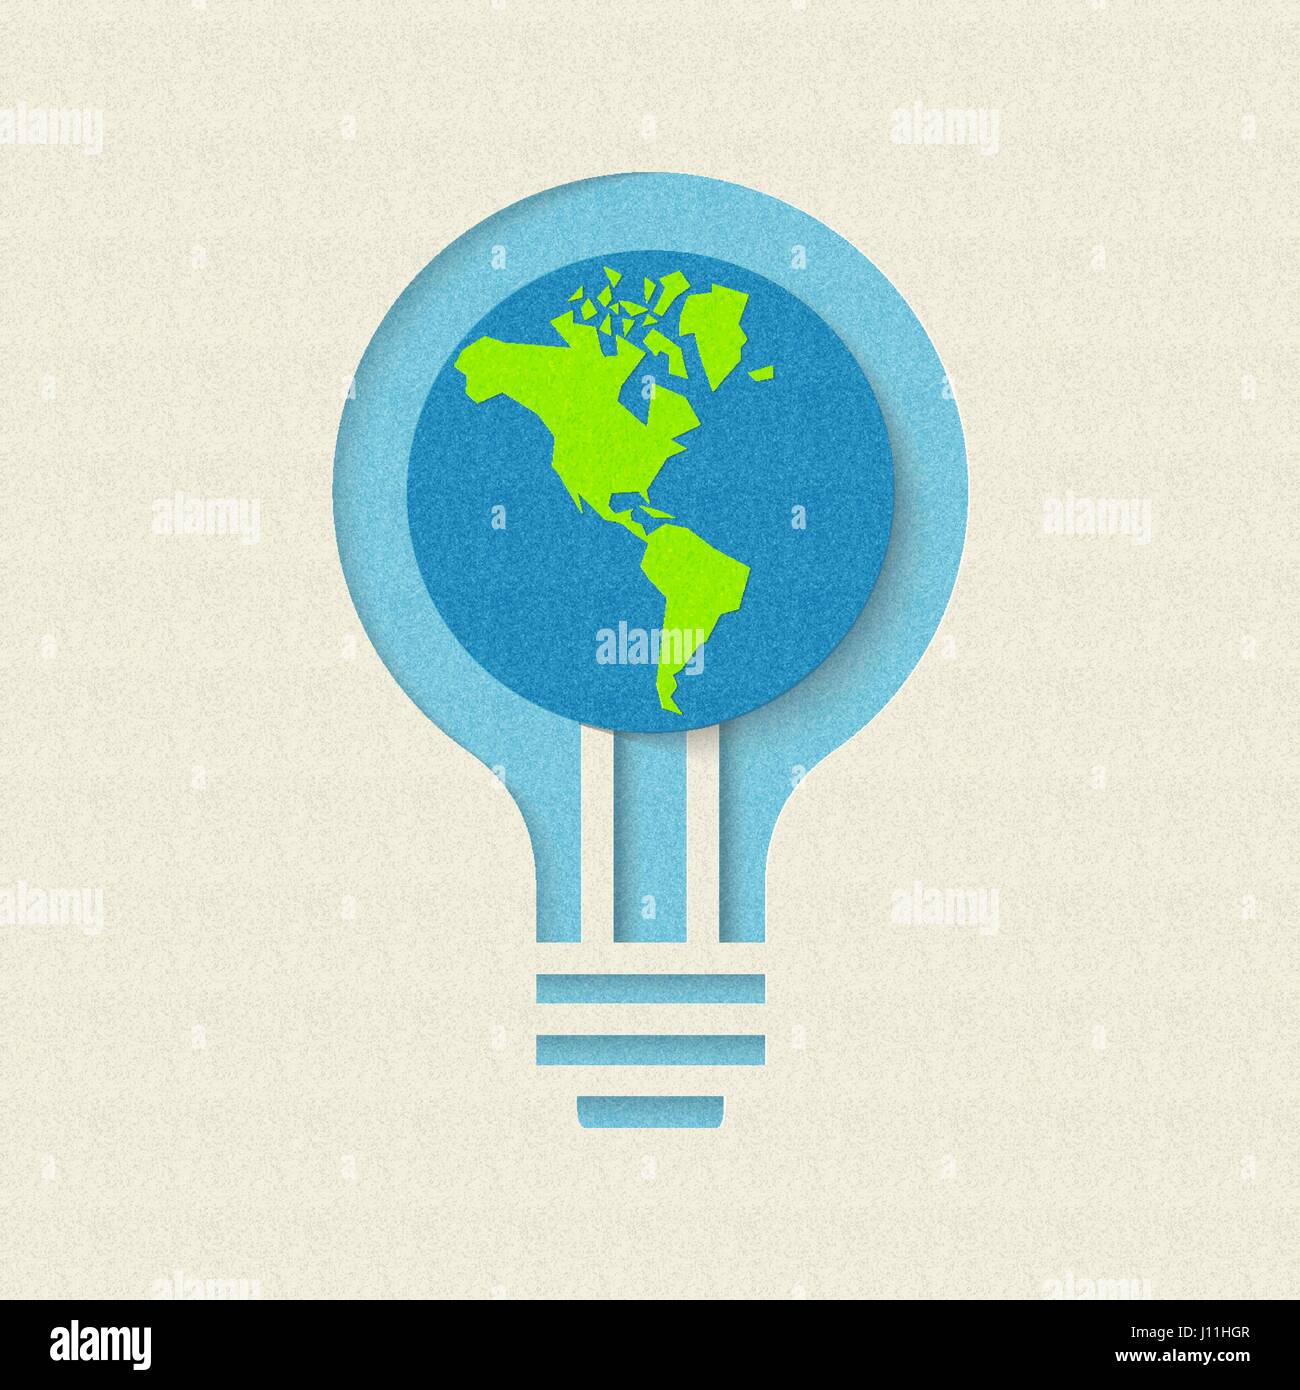 Le jour de la terre papier coupé concept pour la conservation et le recyclage de l'énergie verte. Illustration de soins mondiale de l'environnement. Vecteur EPS10. Illustration de Vecteur